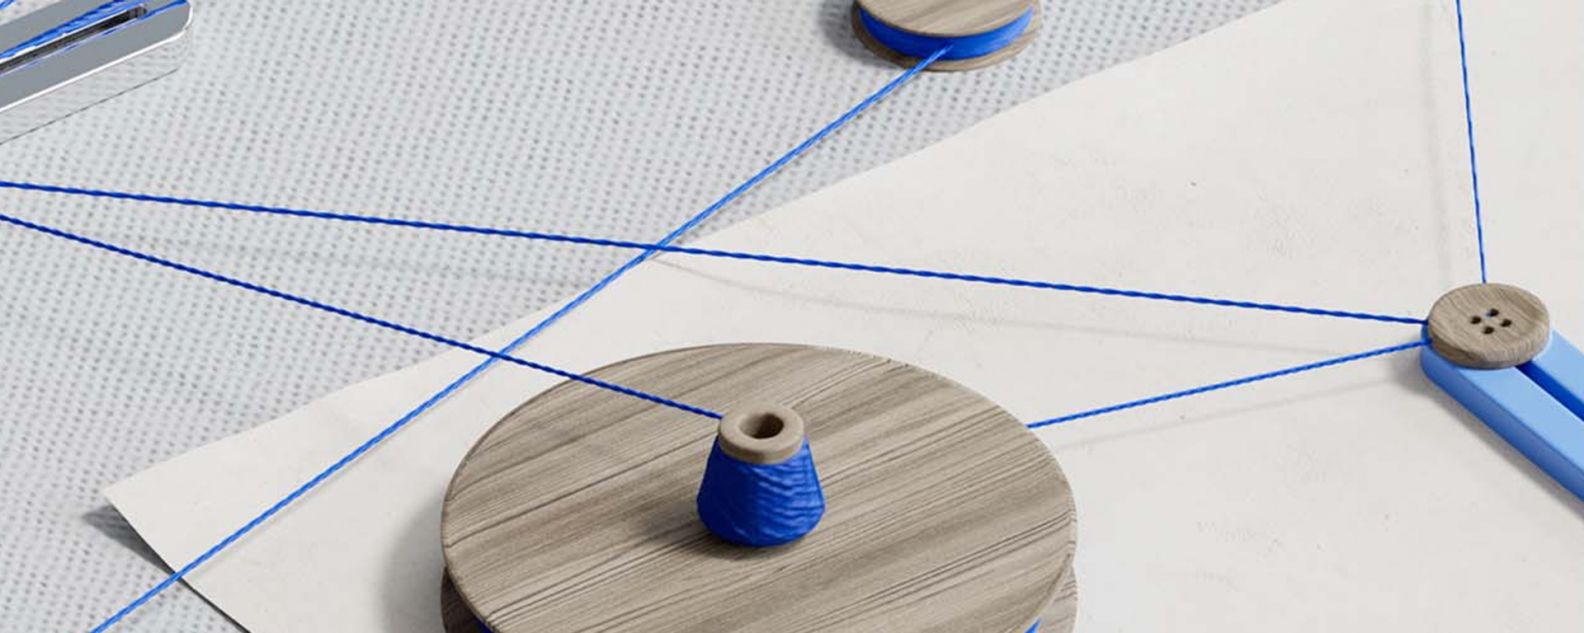 Círculos de hilo azul sobre una mesa